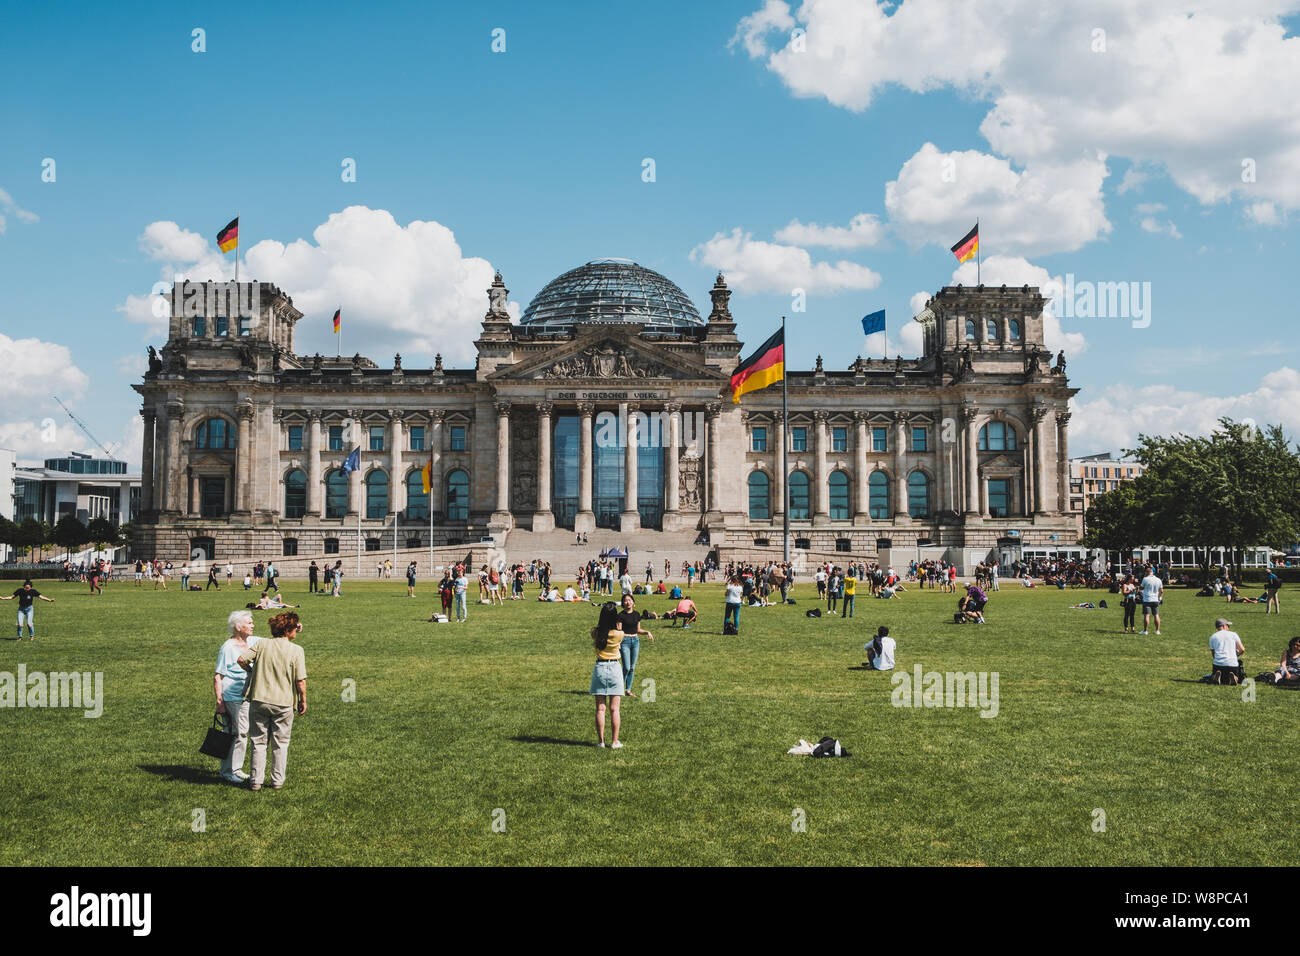 Berlin, Allemagne - Août 2019 : Les gens en face du bâtiment du Reichstag (Parlement allemand), un célèbre monument classique un jour d'été dans la région de Belin Banque D'Images